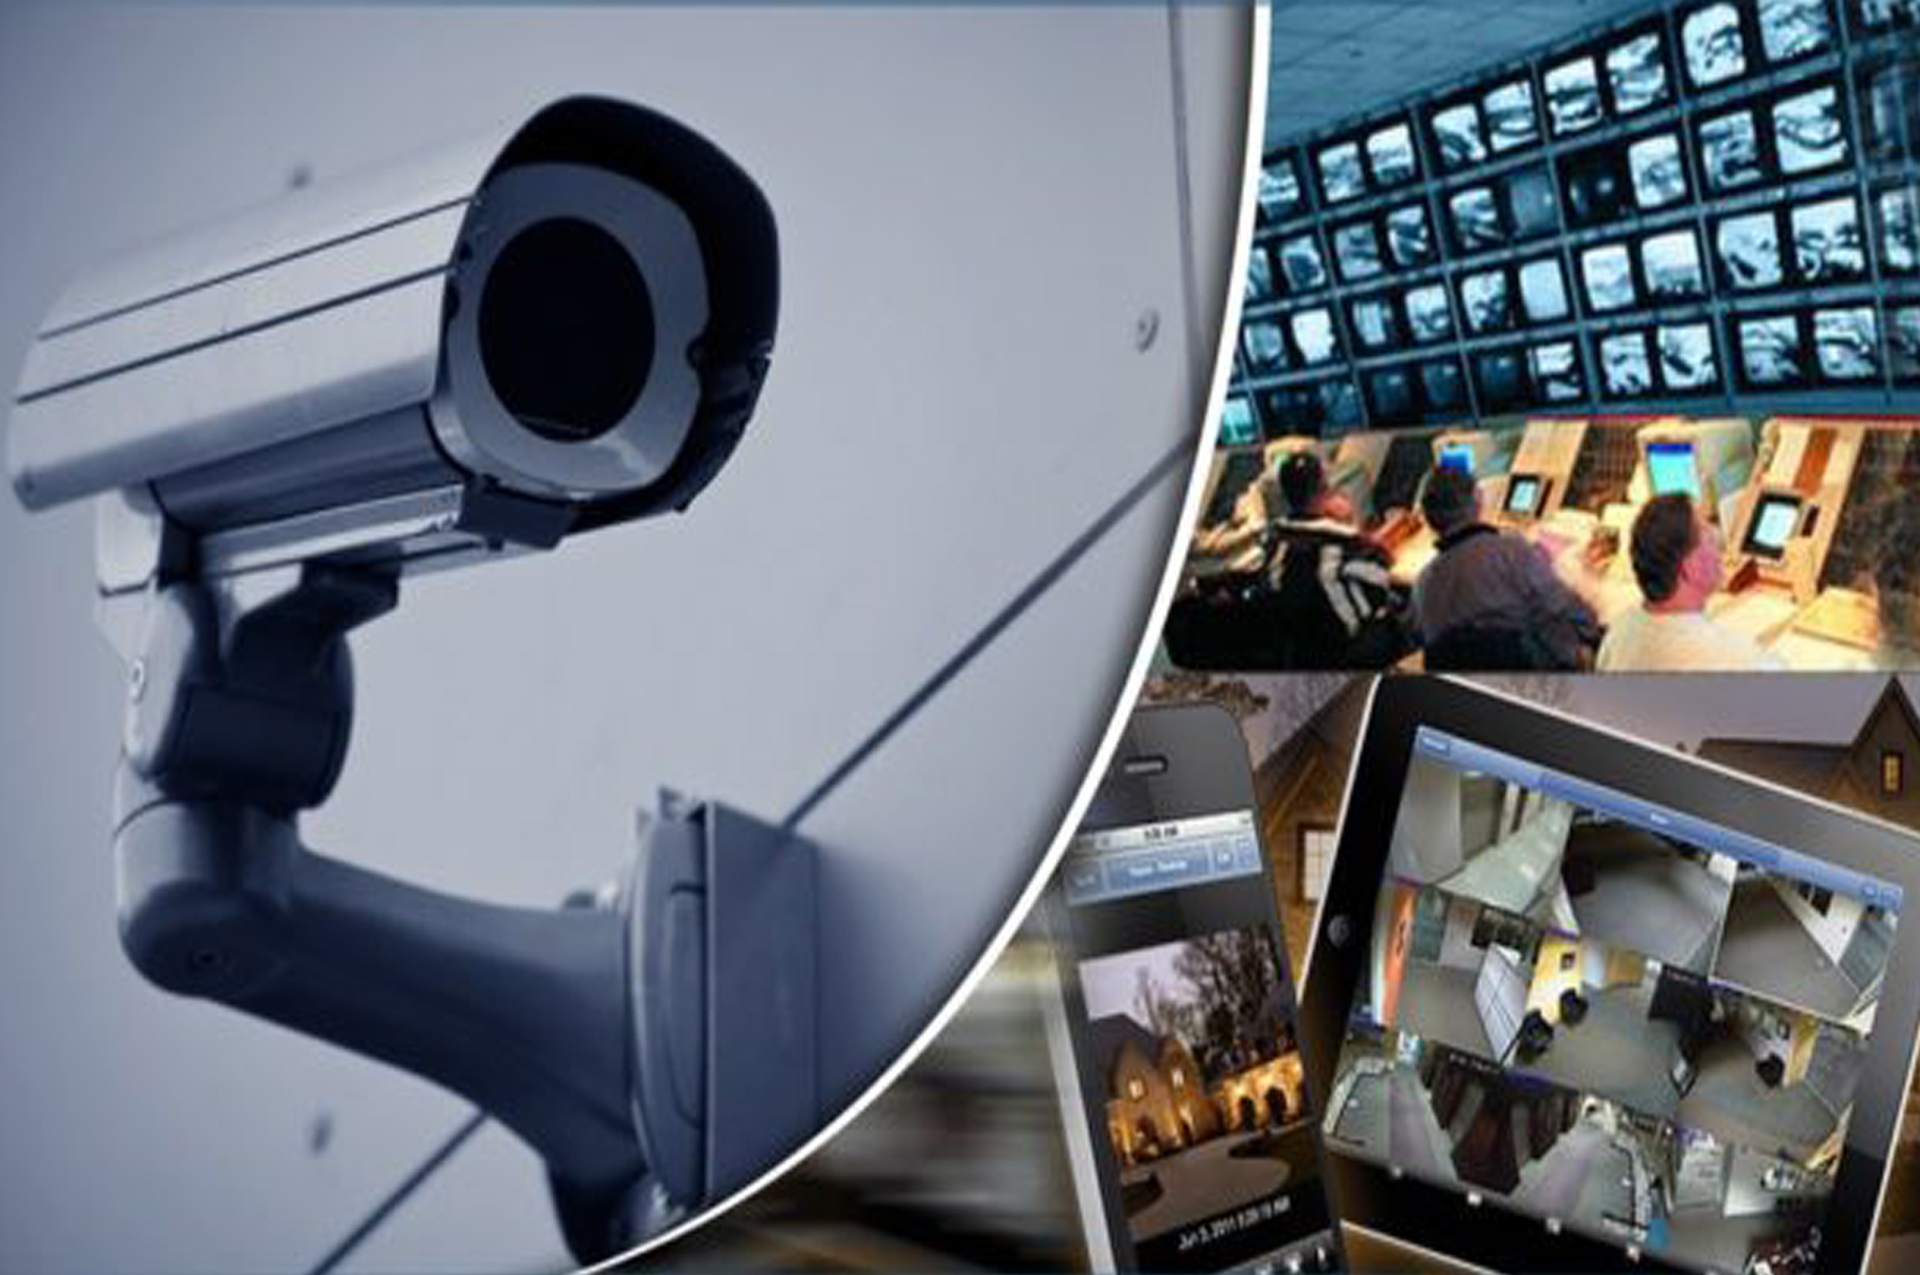 Системы безопасности и видеонаблюдения